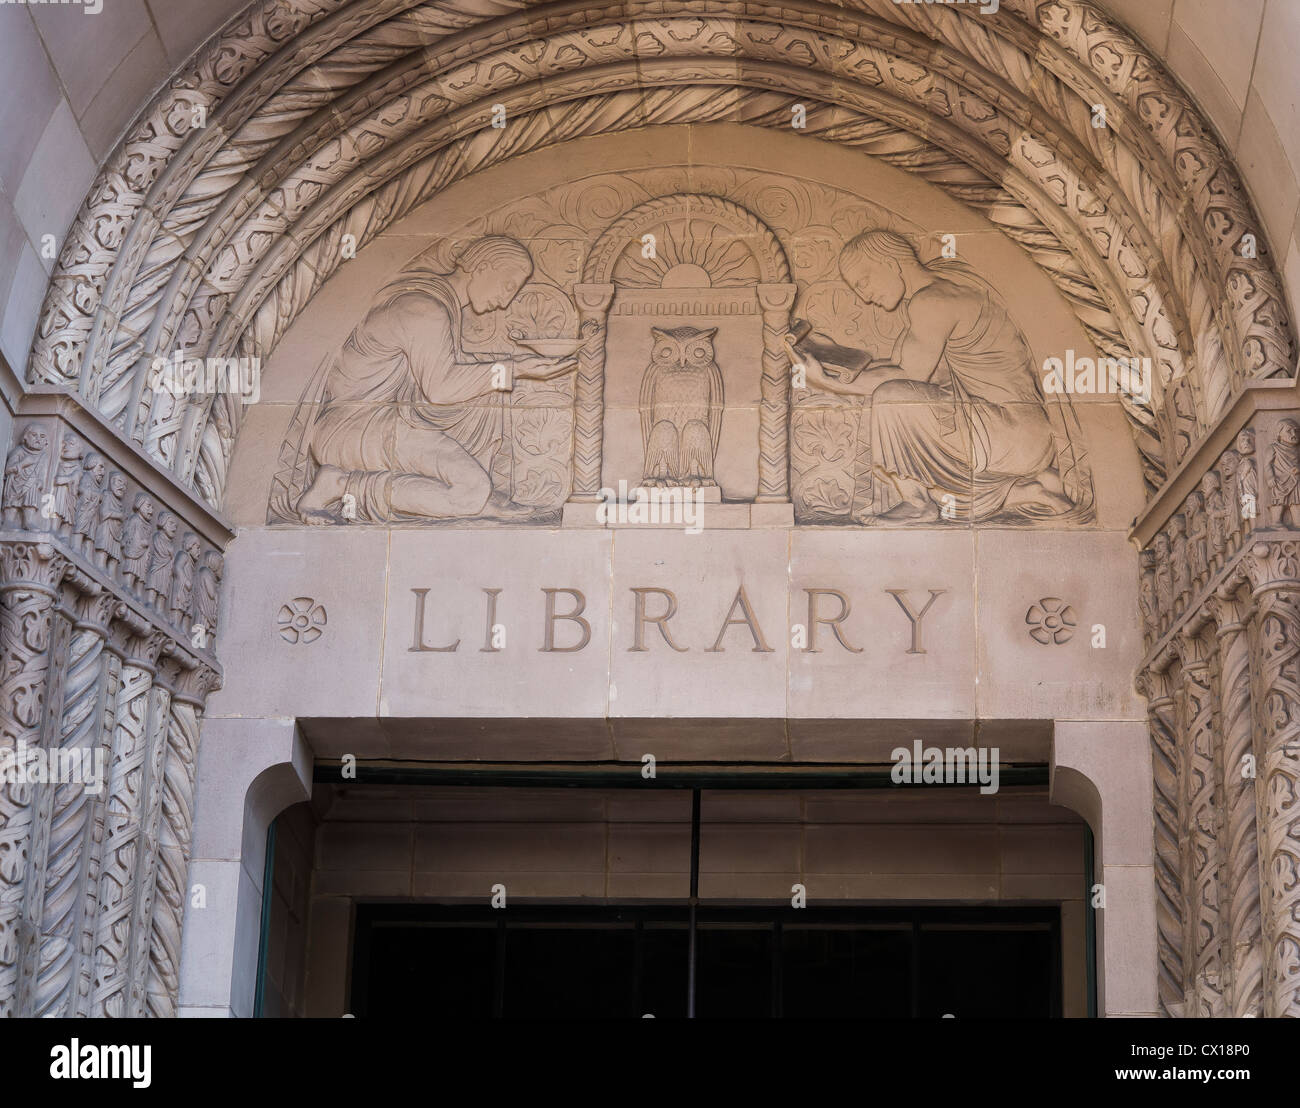 LOS ANGELES, CALIFORNIE, USA - Bibliothèque Powell signe en campus de l'UCLA. Banque D'Images